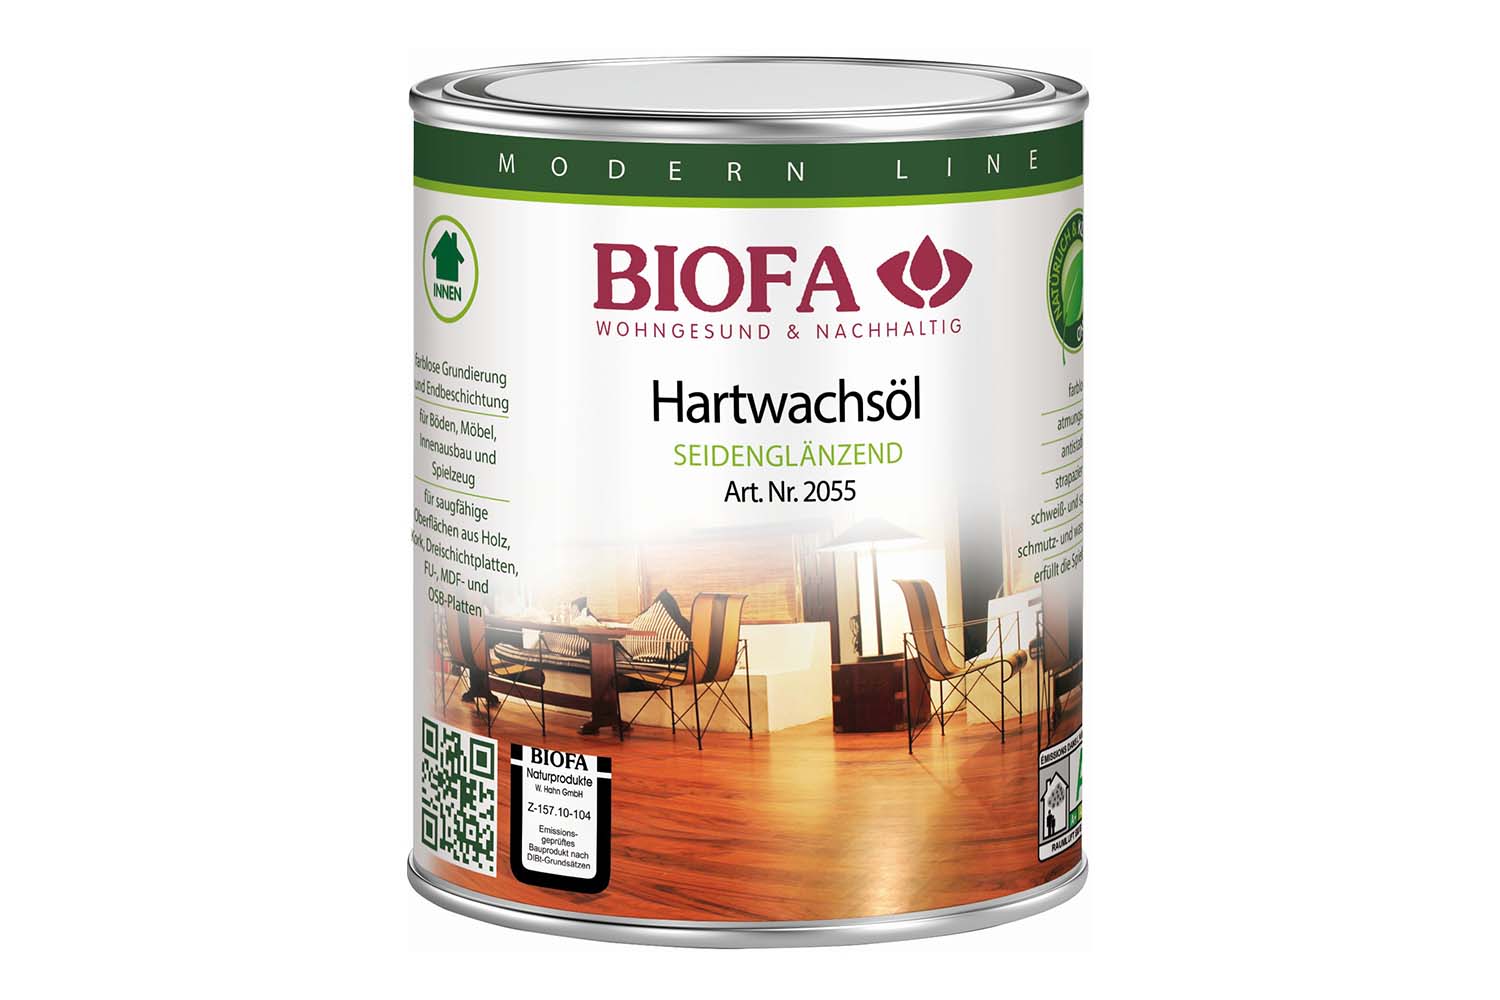 Biofa Hartwachsöl, seidenglänzend